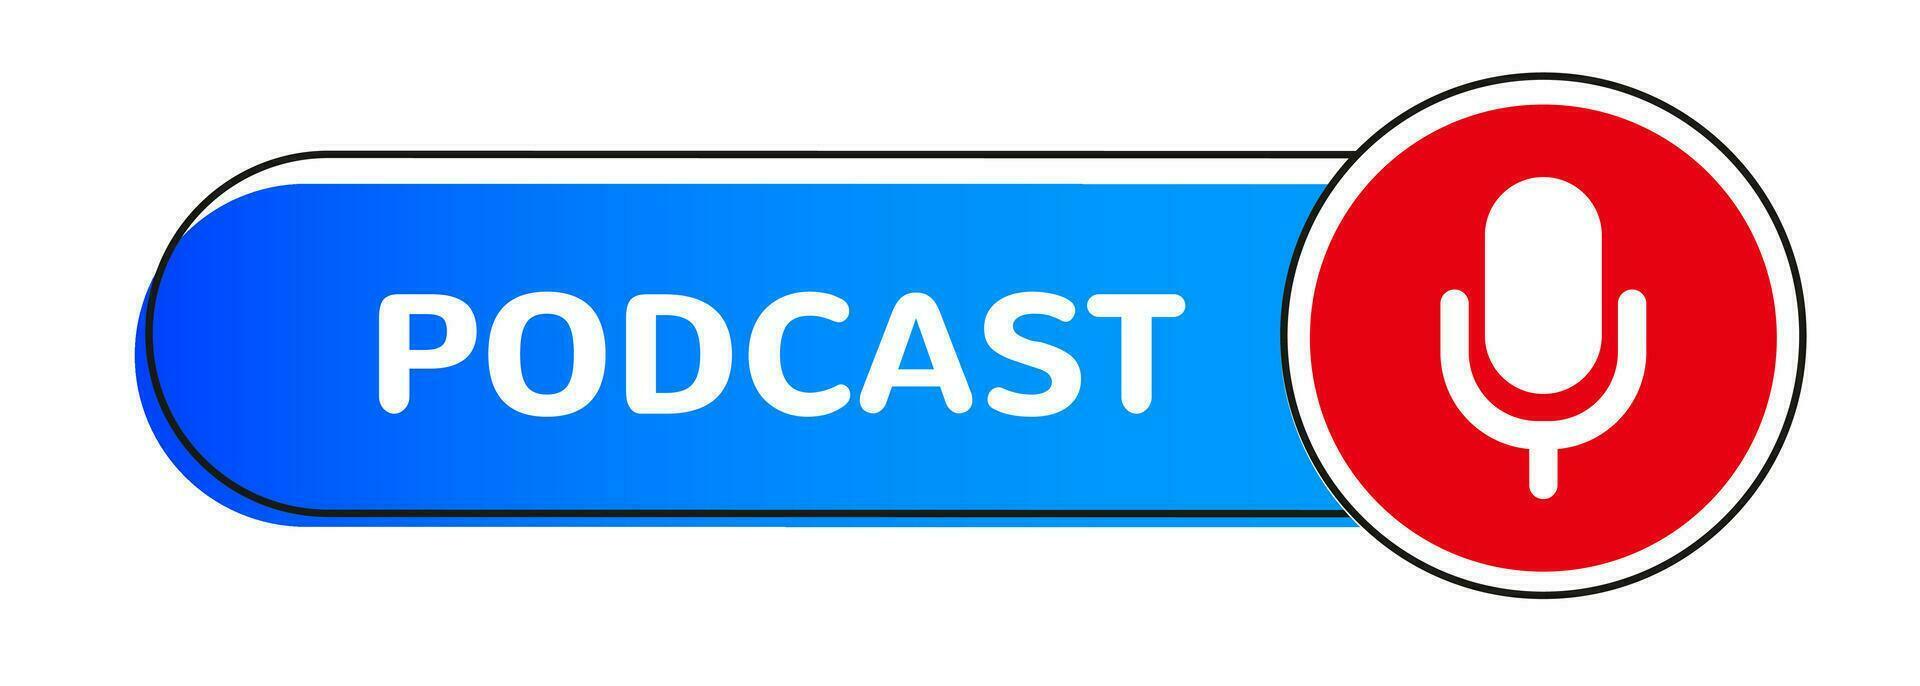 Podcast emblème avec microphone isolé vecteur